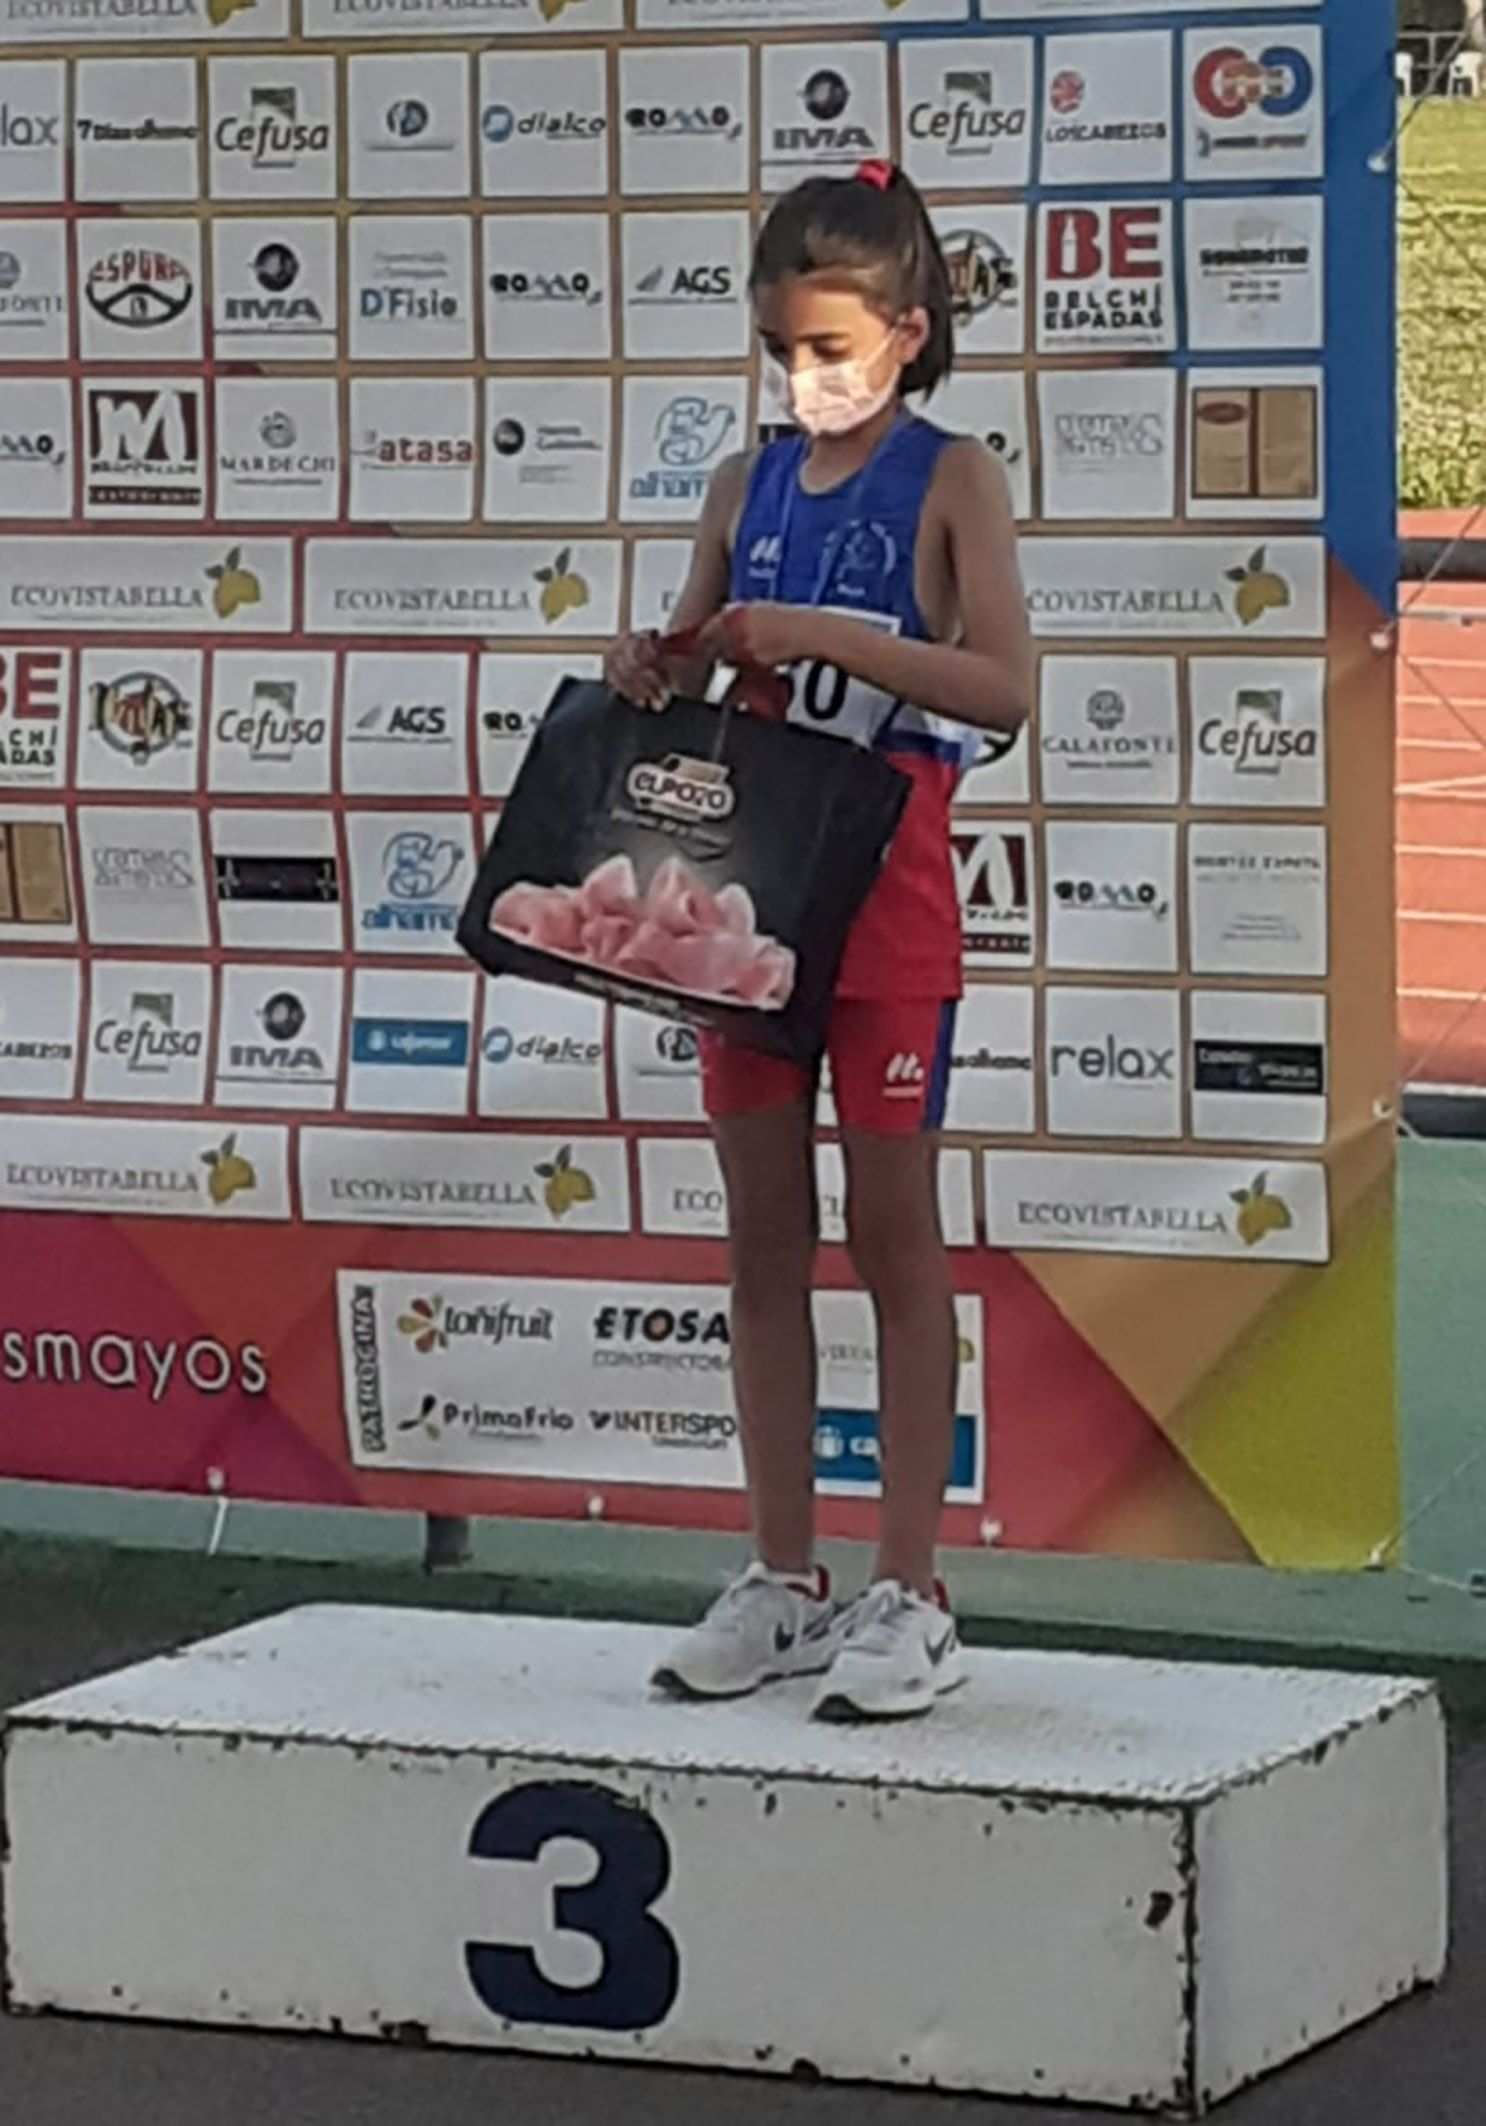 La atleta torreña Carmen Martínez bronce en categoría sub 10 de Los Mayos de Alhama2